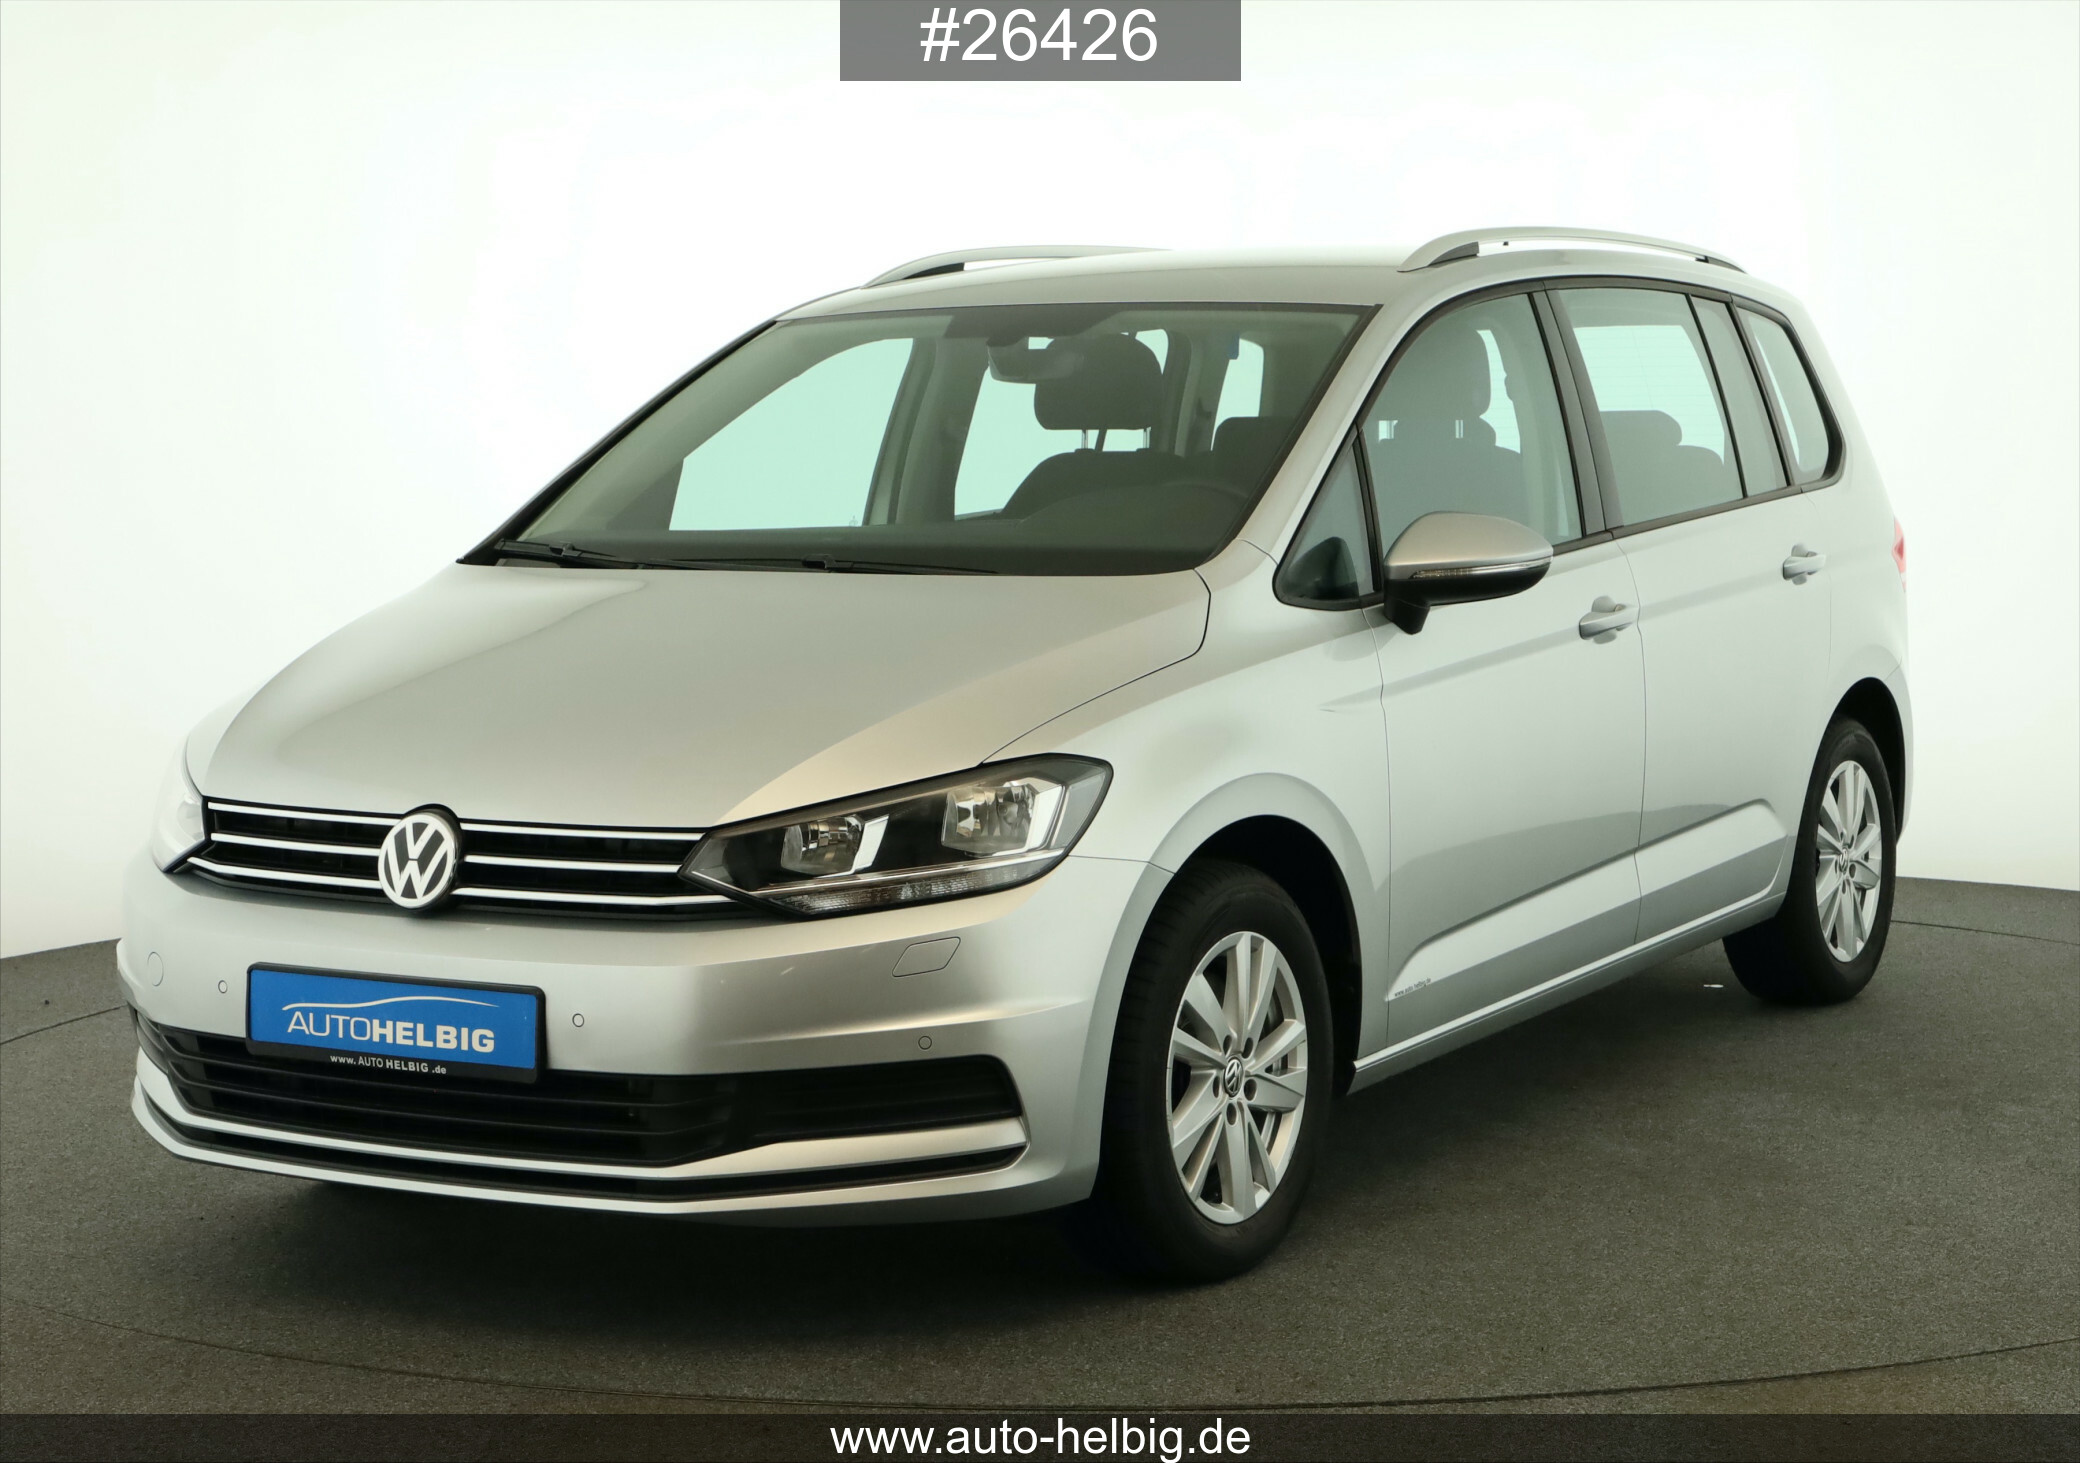 Volkswagen Touran 1.6 TDI Comfortline ### ##